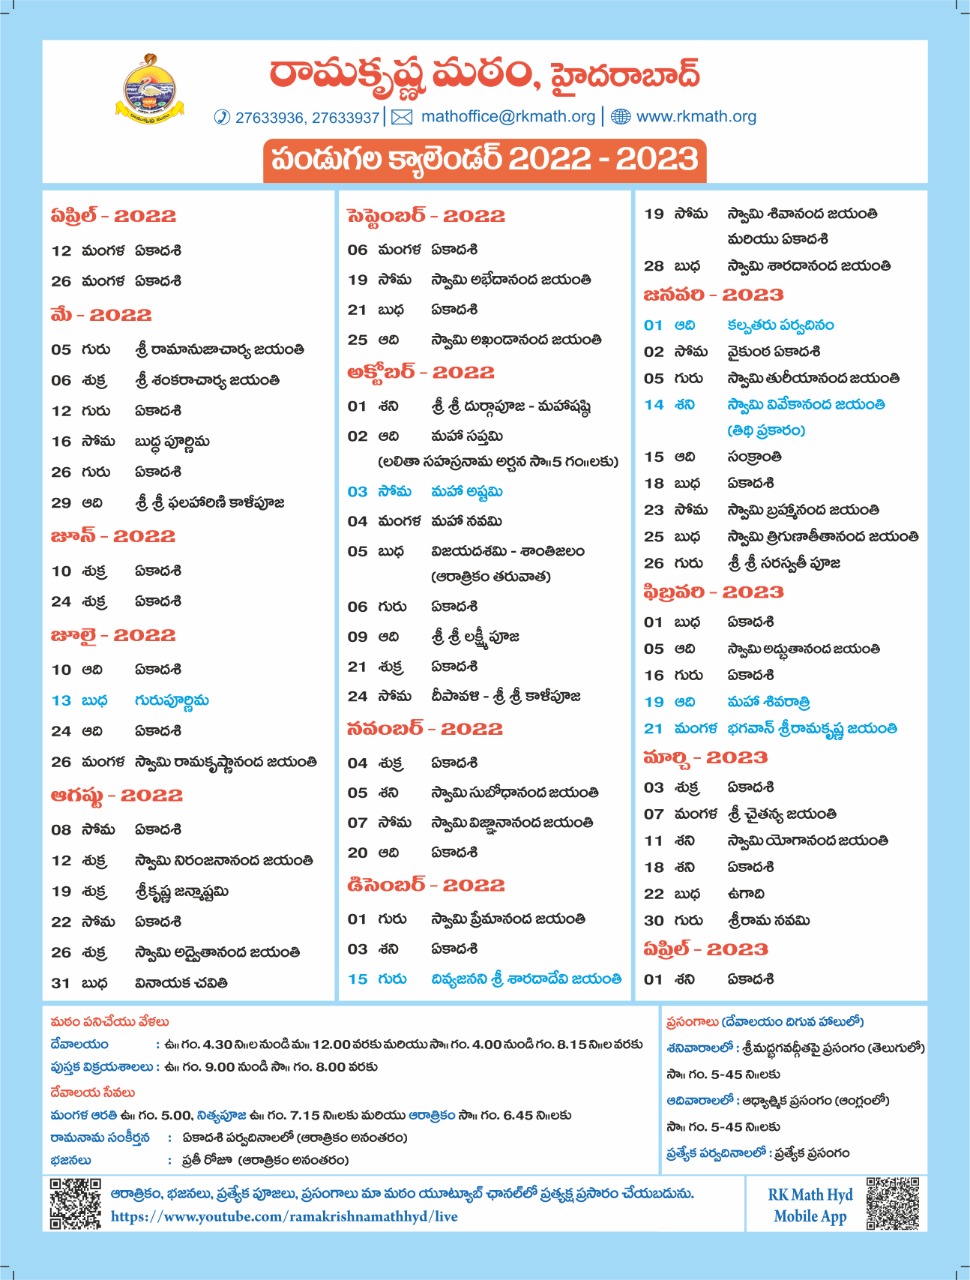 Festival calendar Telugu - RK Math